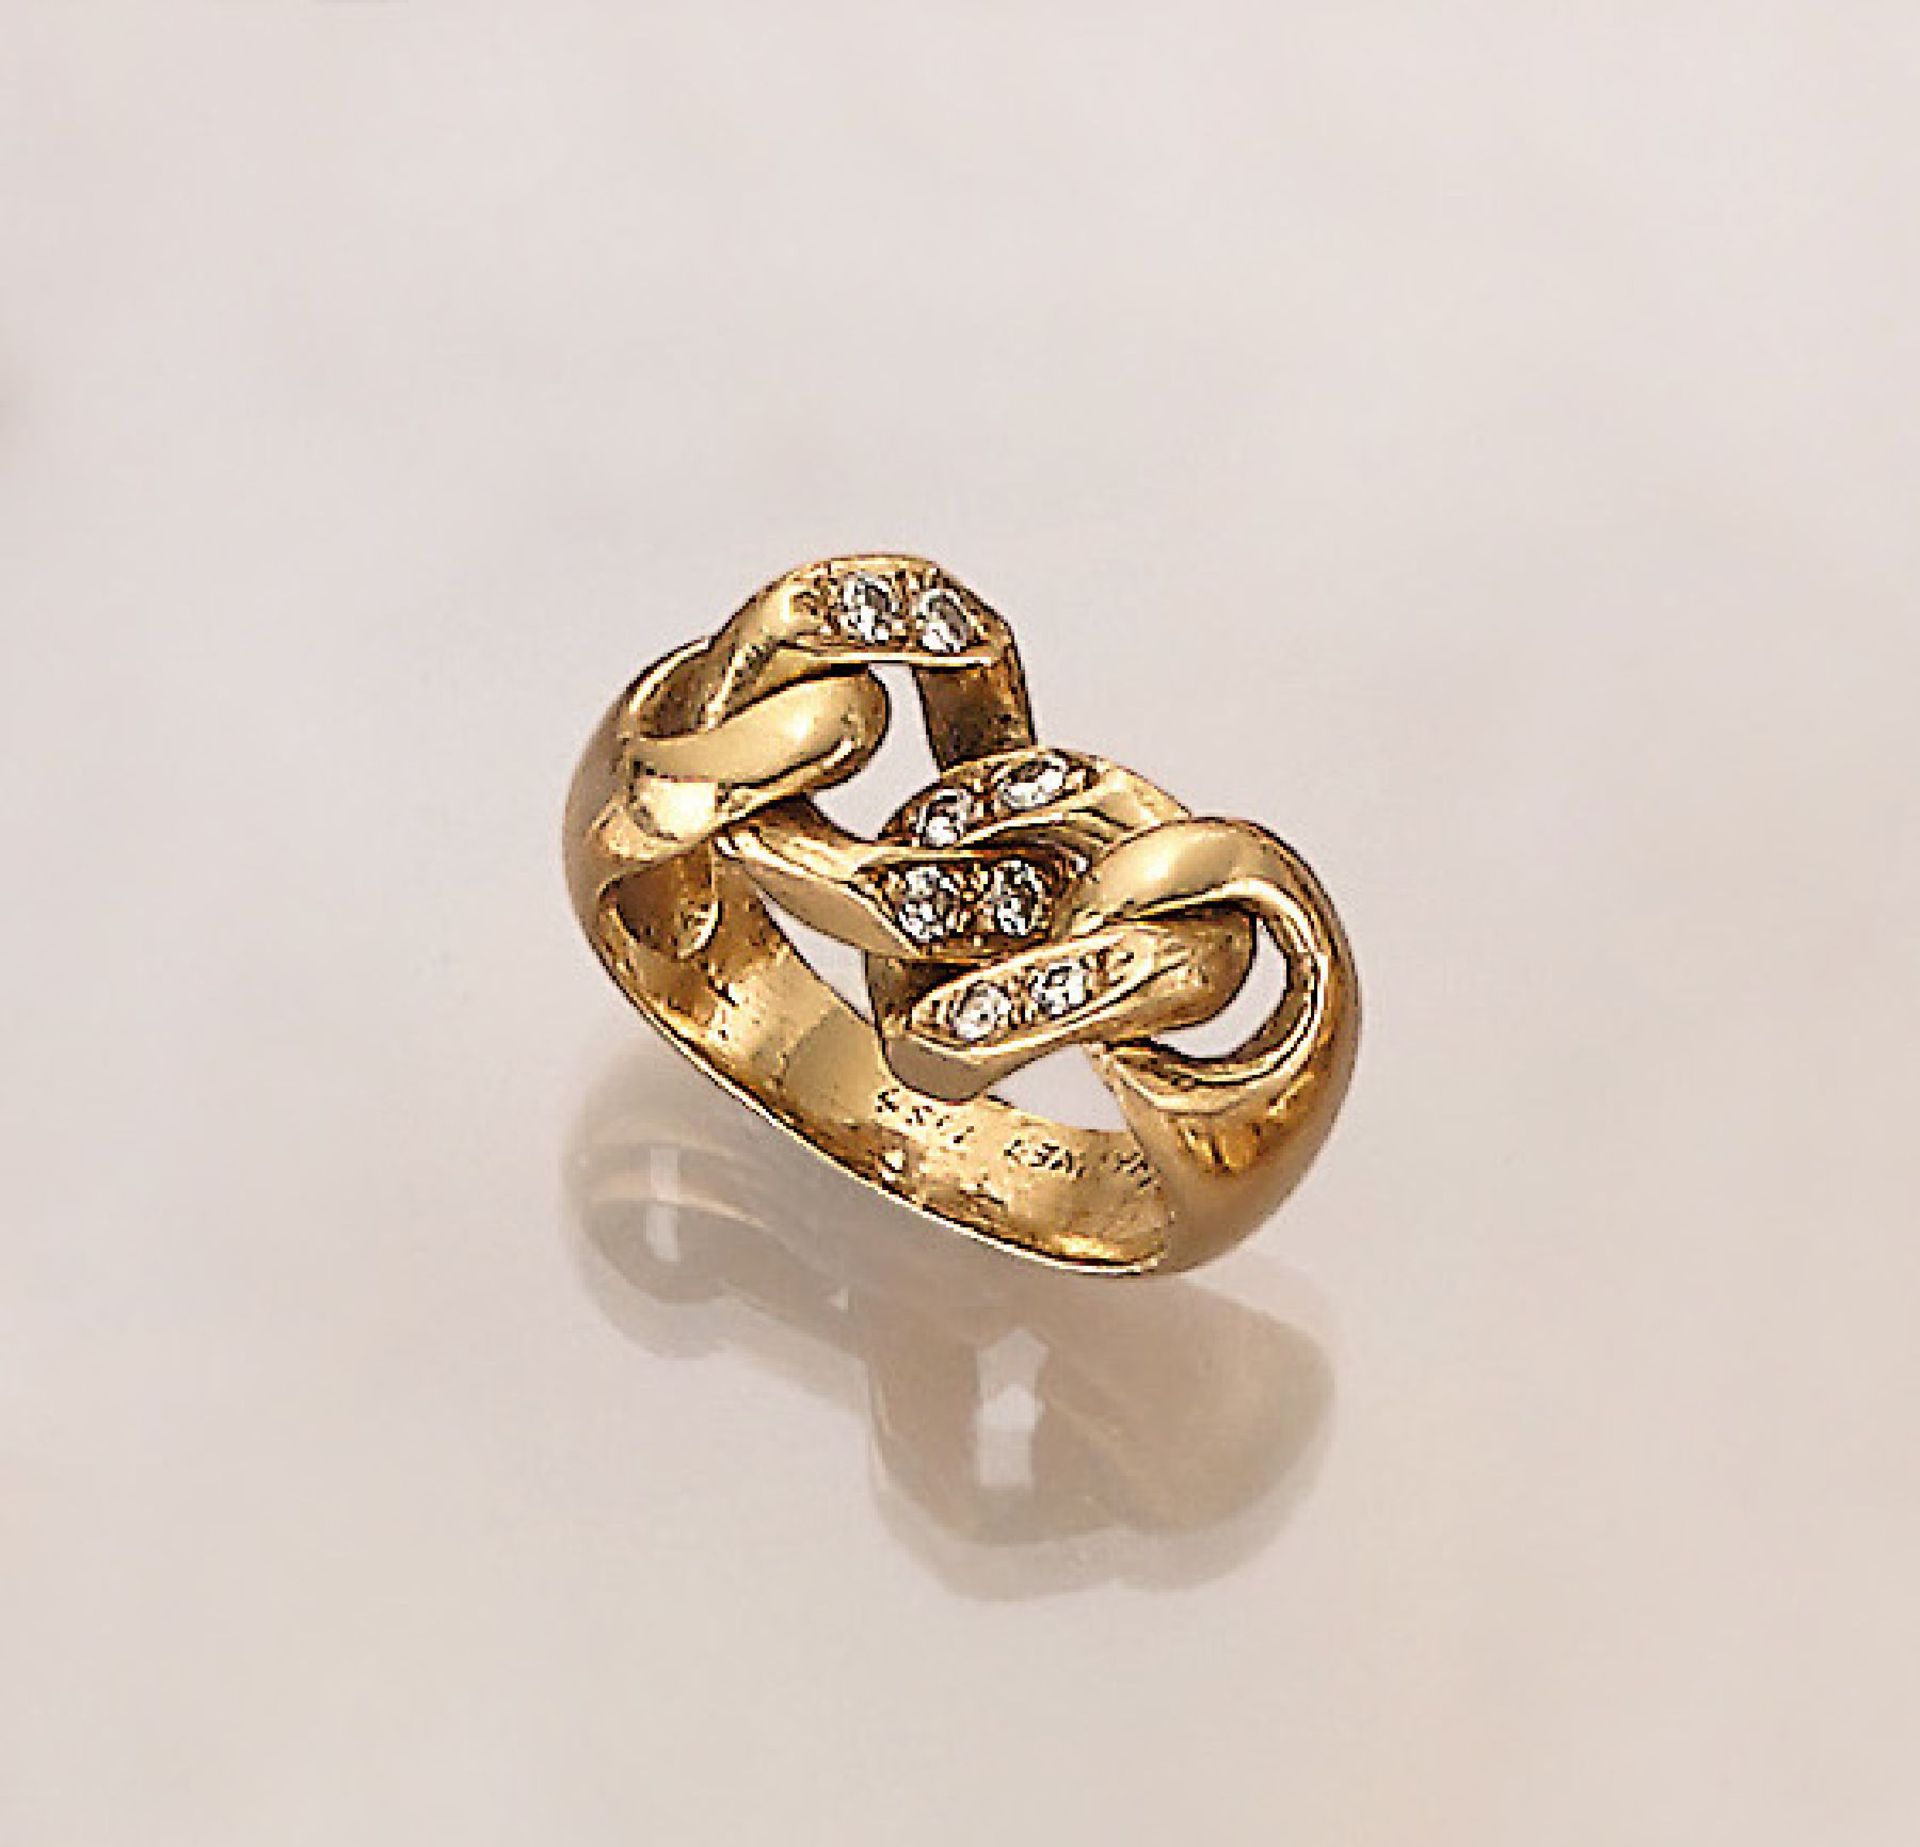 18 kt Gold CHAUMET Ring mit Brillanten, GG 750/000, Ringkopf im Kettendesign, Brillanten zus. ca.